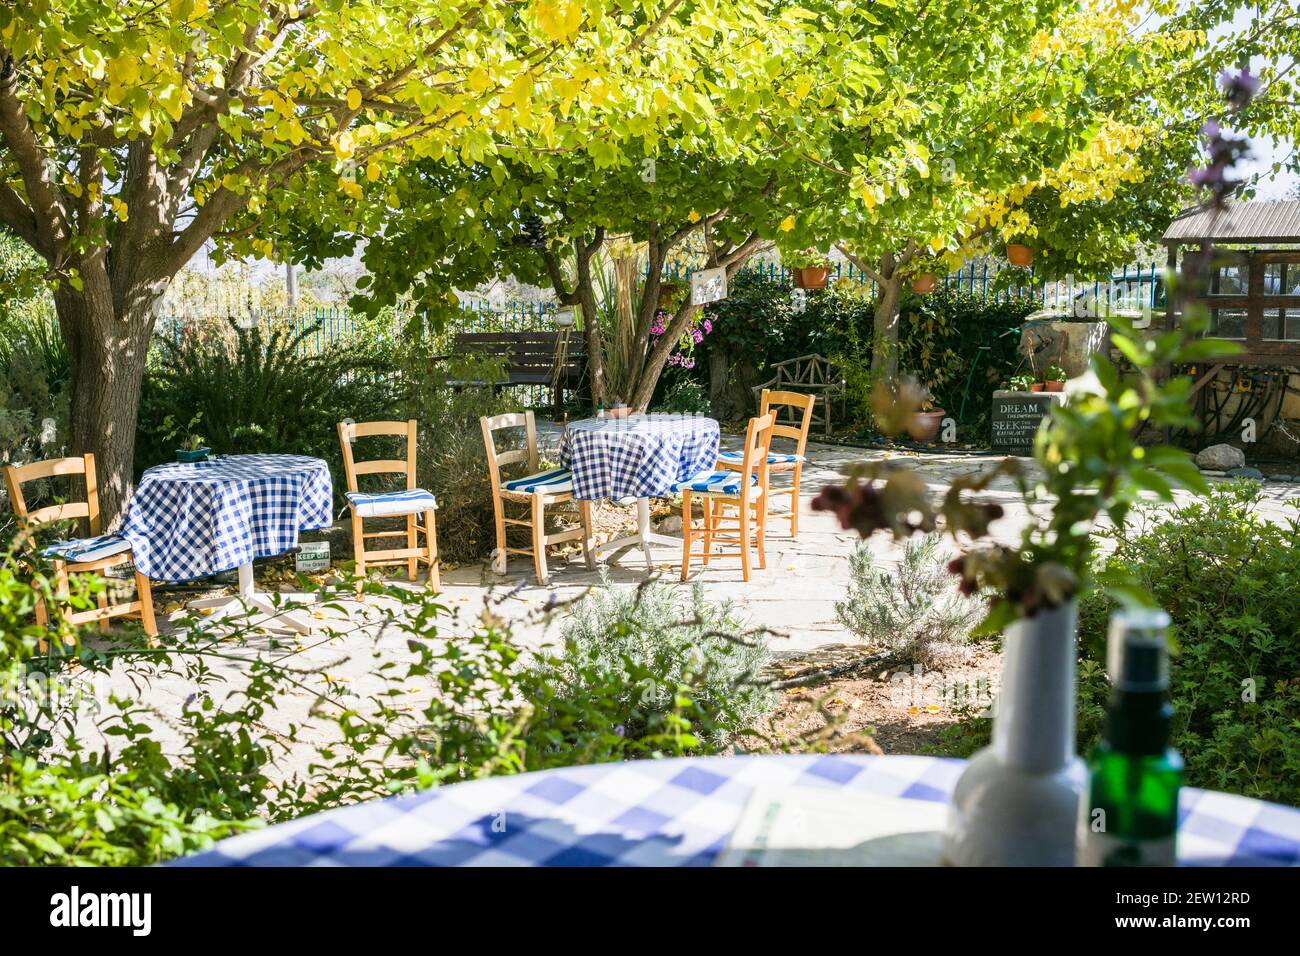 Caffè mediterraneo in una calda giornata di sole. Tabelle con tovaglie controllate in blu e bianco. Giardino piantando con alberi di Citrus. Foto Stock